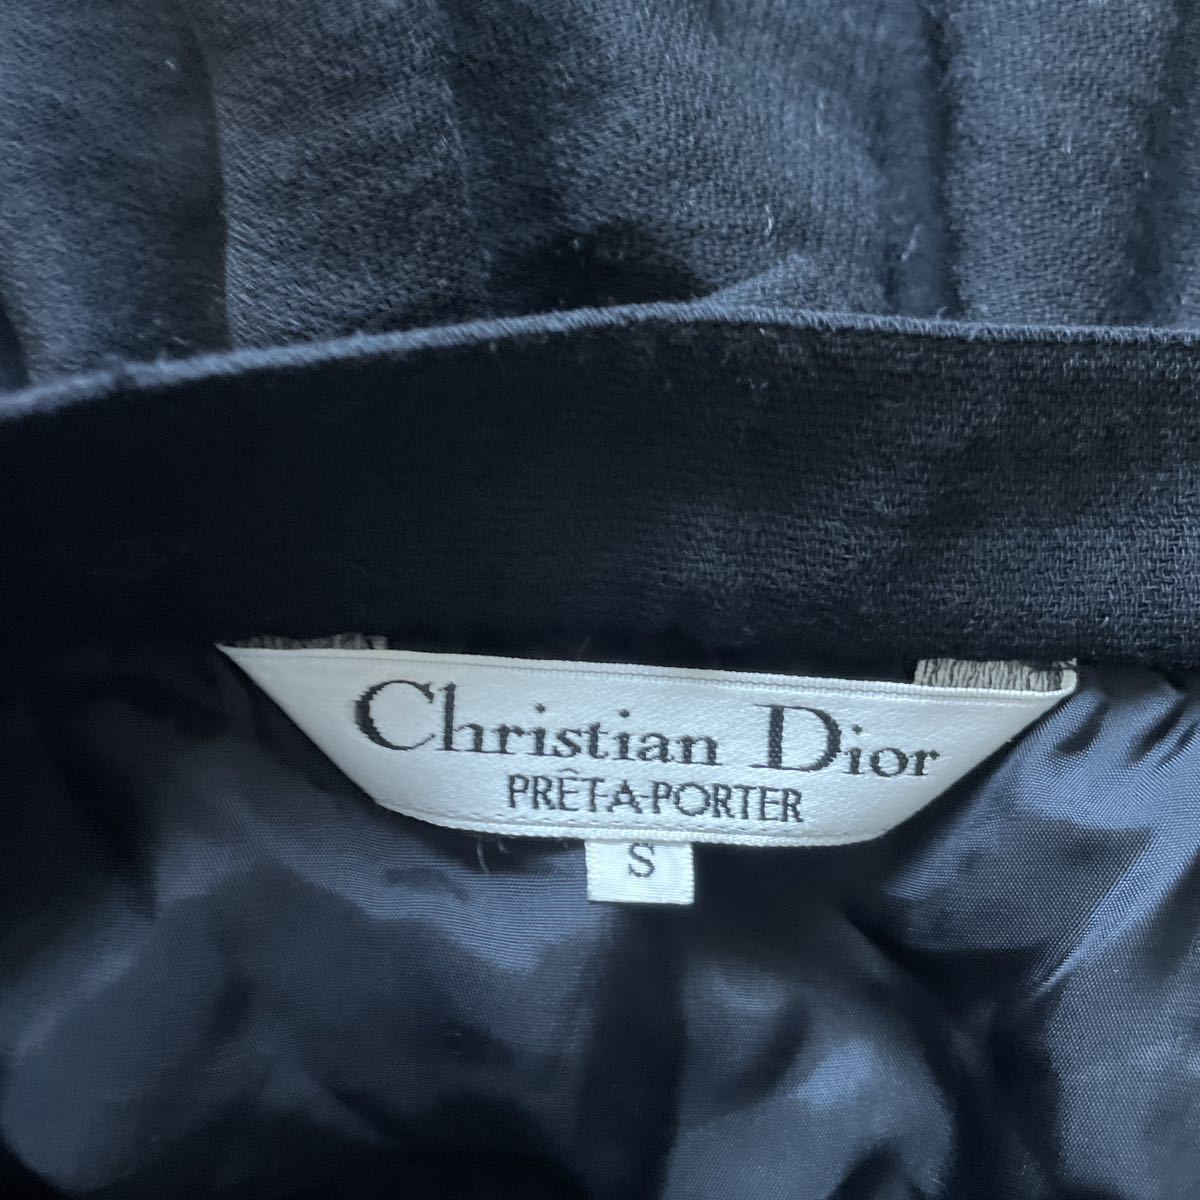  Christian Dior ディオール フレアスカート 黒ブラック ウール100% S_画像9